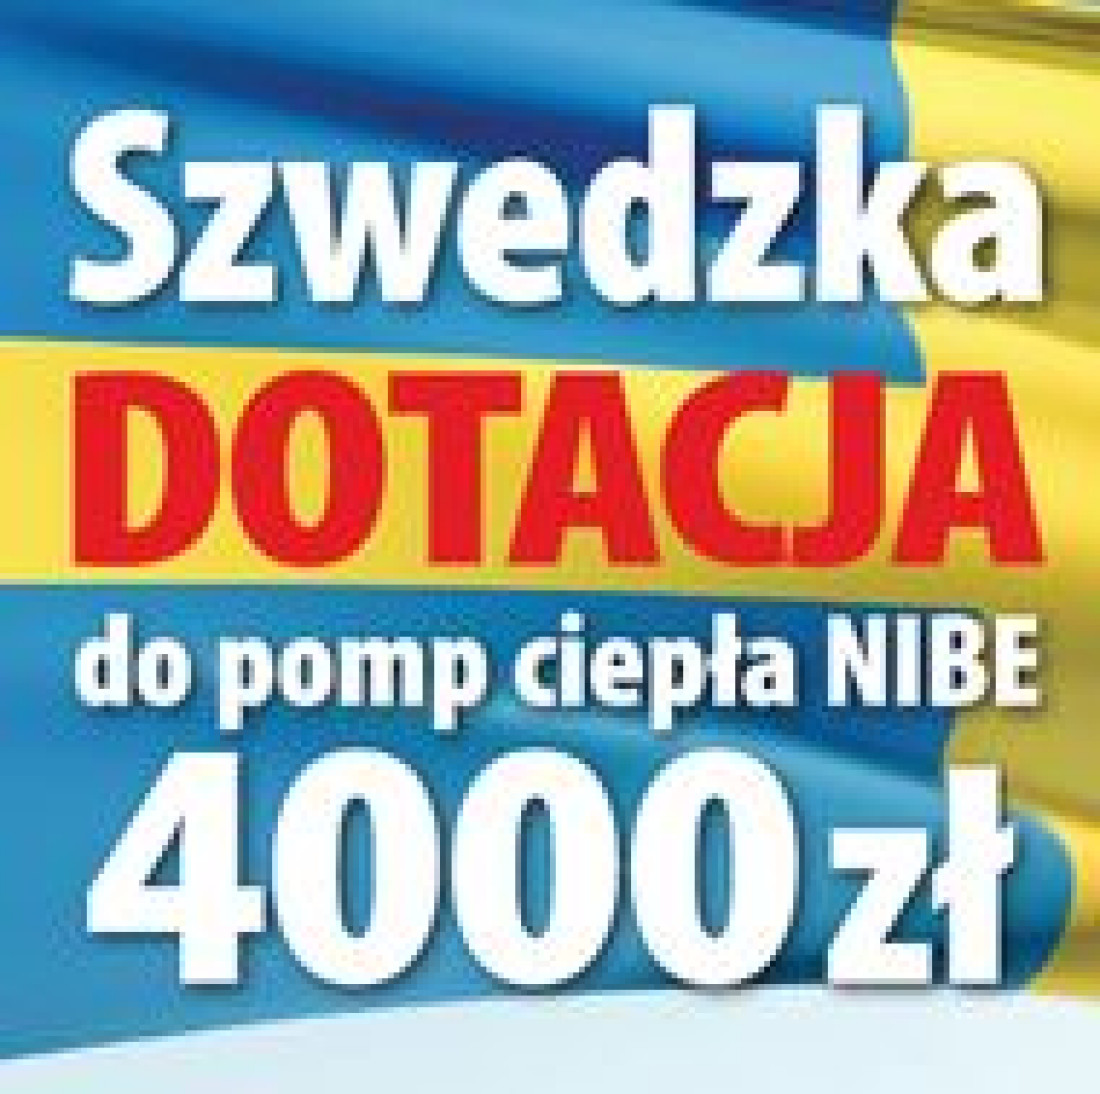 Szwedzka dotacja 4000 zł do pomp ciepła NIBE SPLIT